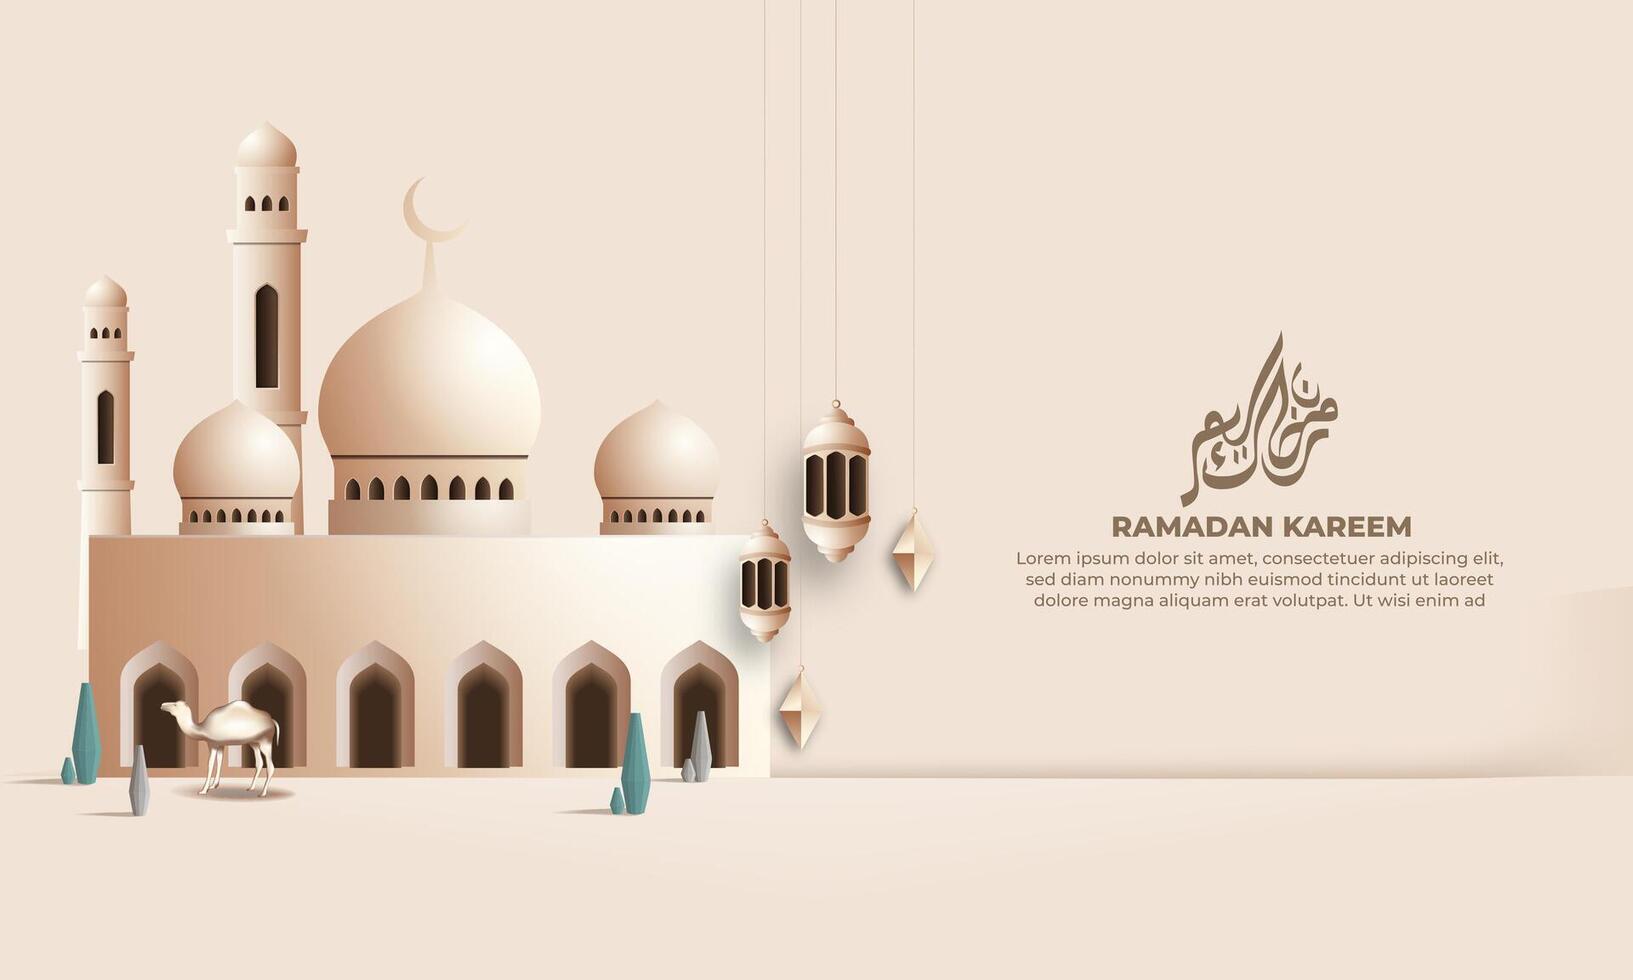 realista Ramadã fundo com mesquita, lanterna, para bandeira, cumprimento cartão vetor